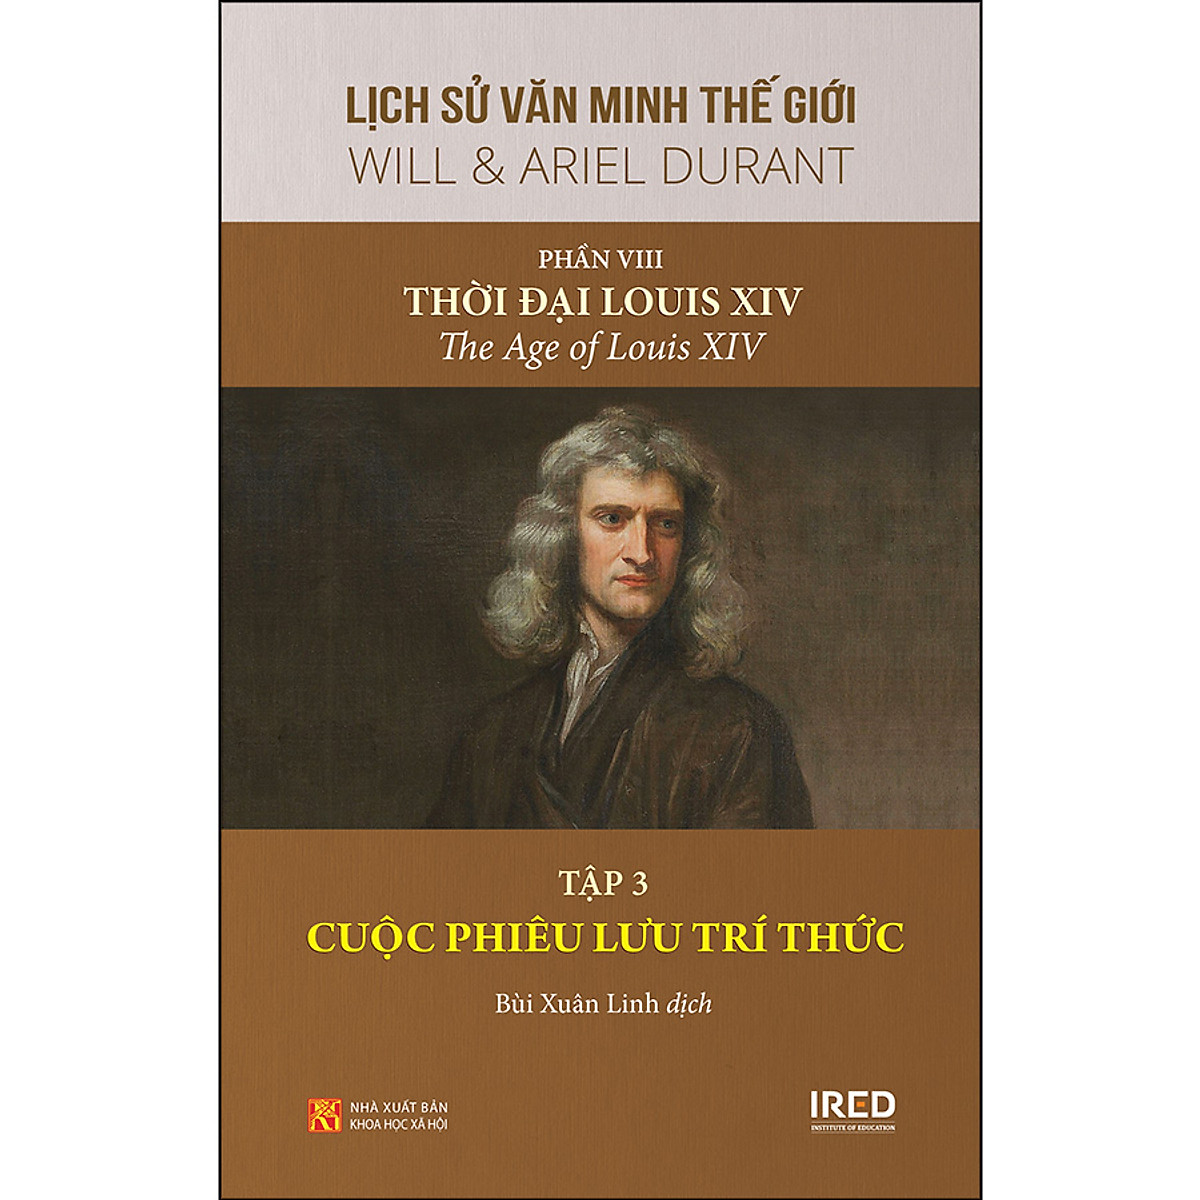 Lịch Sử Văn Minh Thế Giới - Phần VIII: Thời Đại Louis XIV, Tập 3: Cuộc Phiêu Lưu Trí Thức